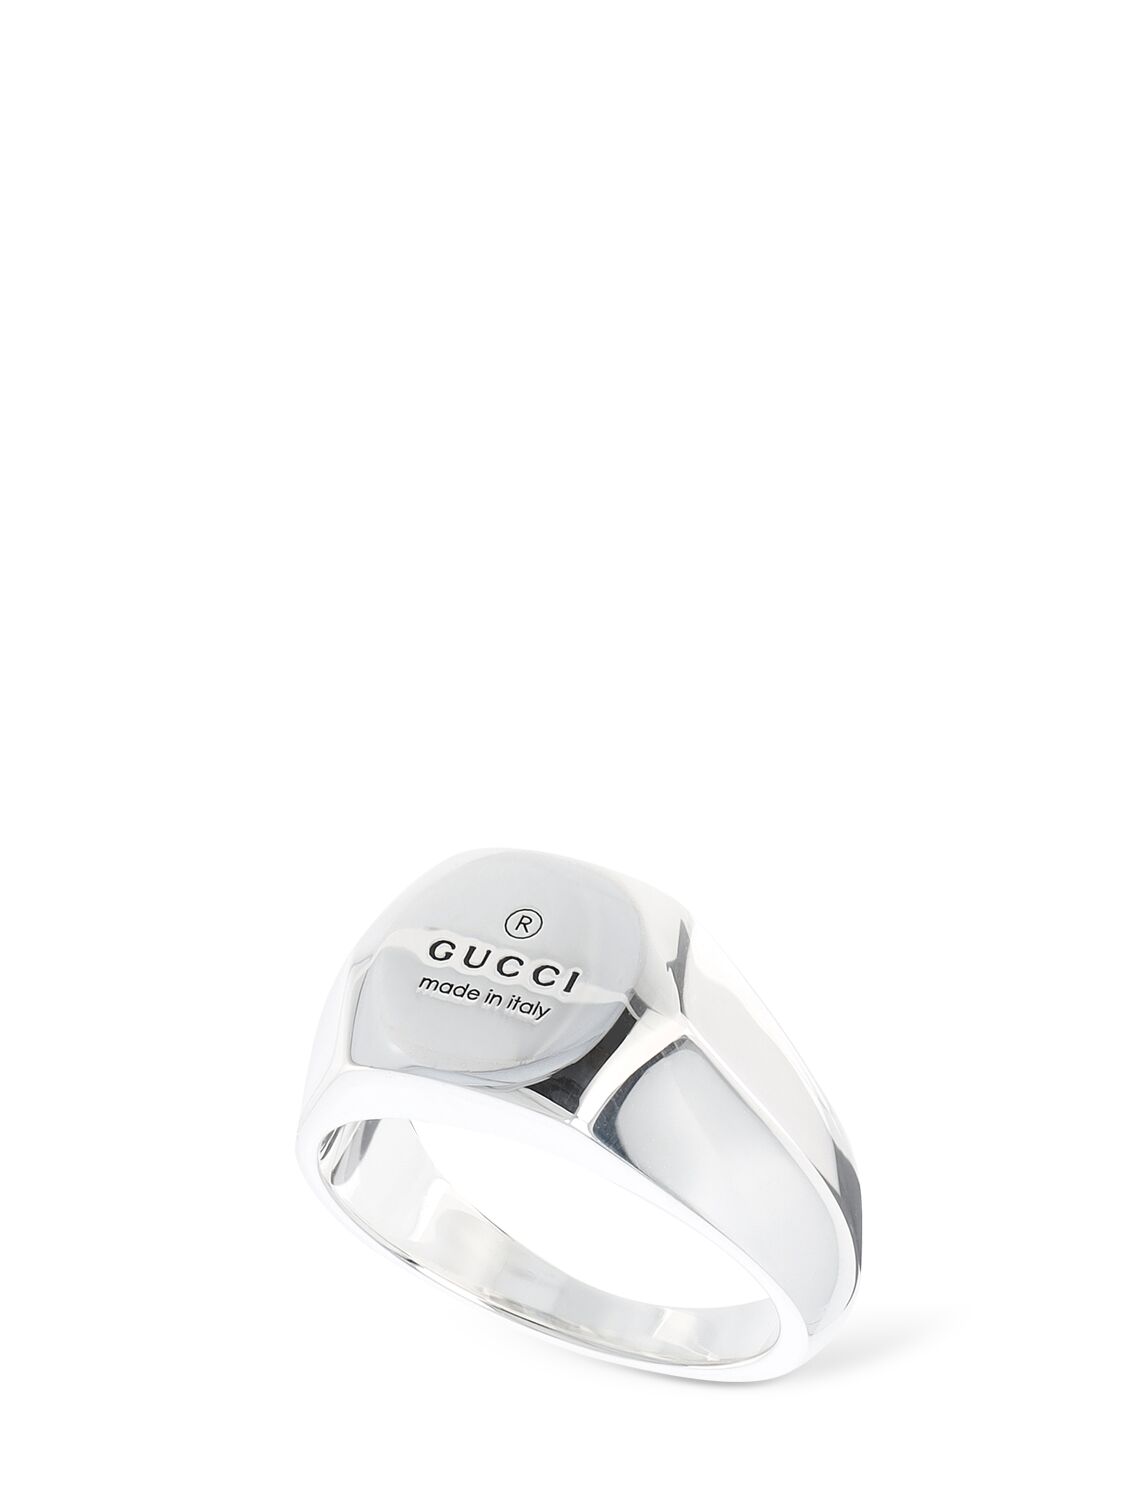 Gucci Trademark纯银戒指 In Silver